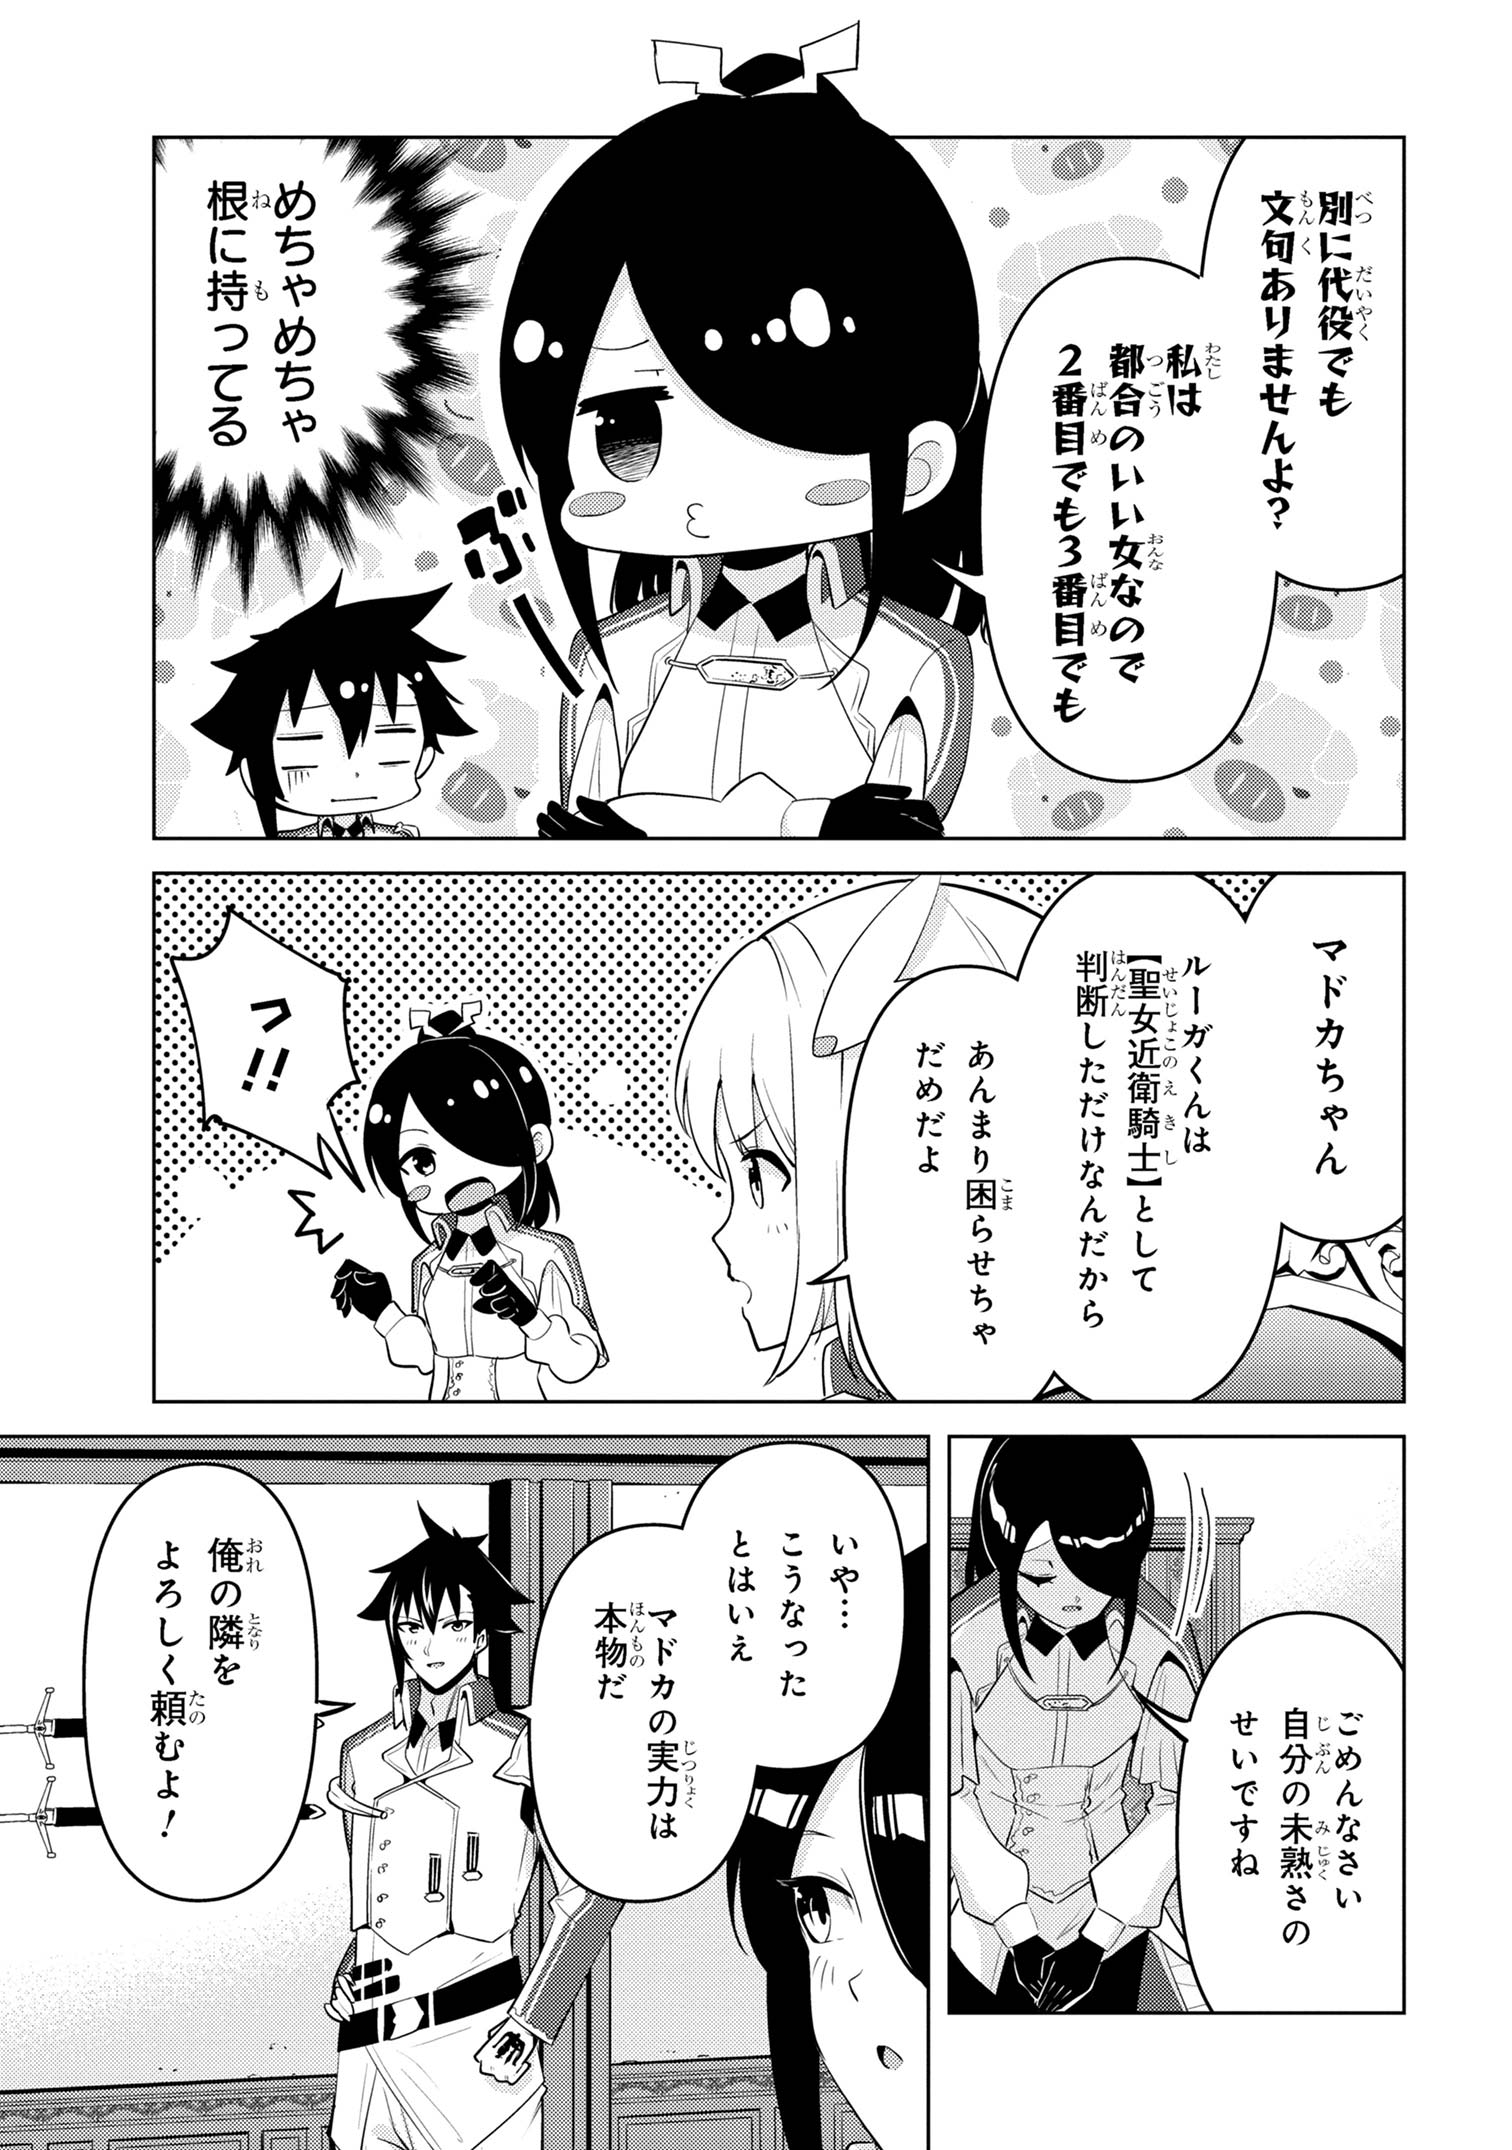 Sekishi ni Natta kedo Danchou no Oppai ga Sugosugite Kokoro ga Kiyomerarenai - Chapter 33 - Page 3